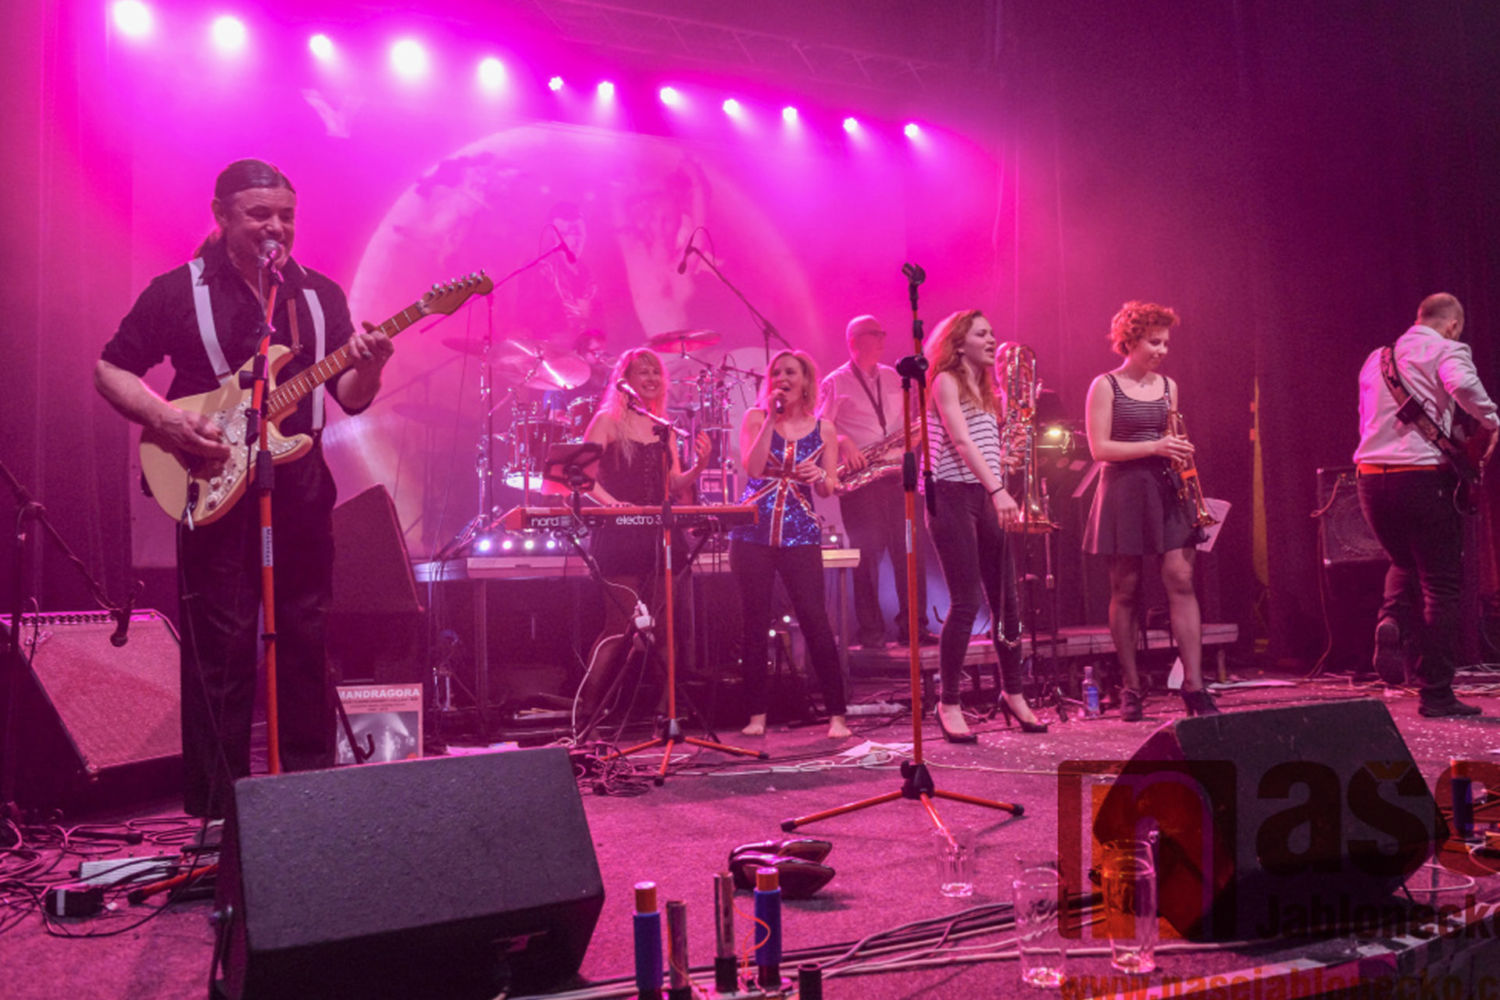 Jablonecká rocková kapela Mandragora hrající v klubu Woko - Jablonec nad Nisou